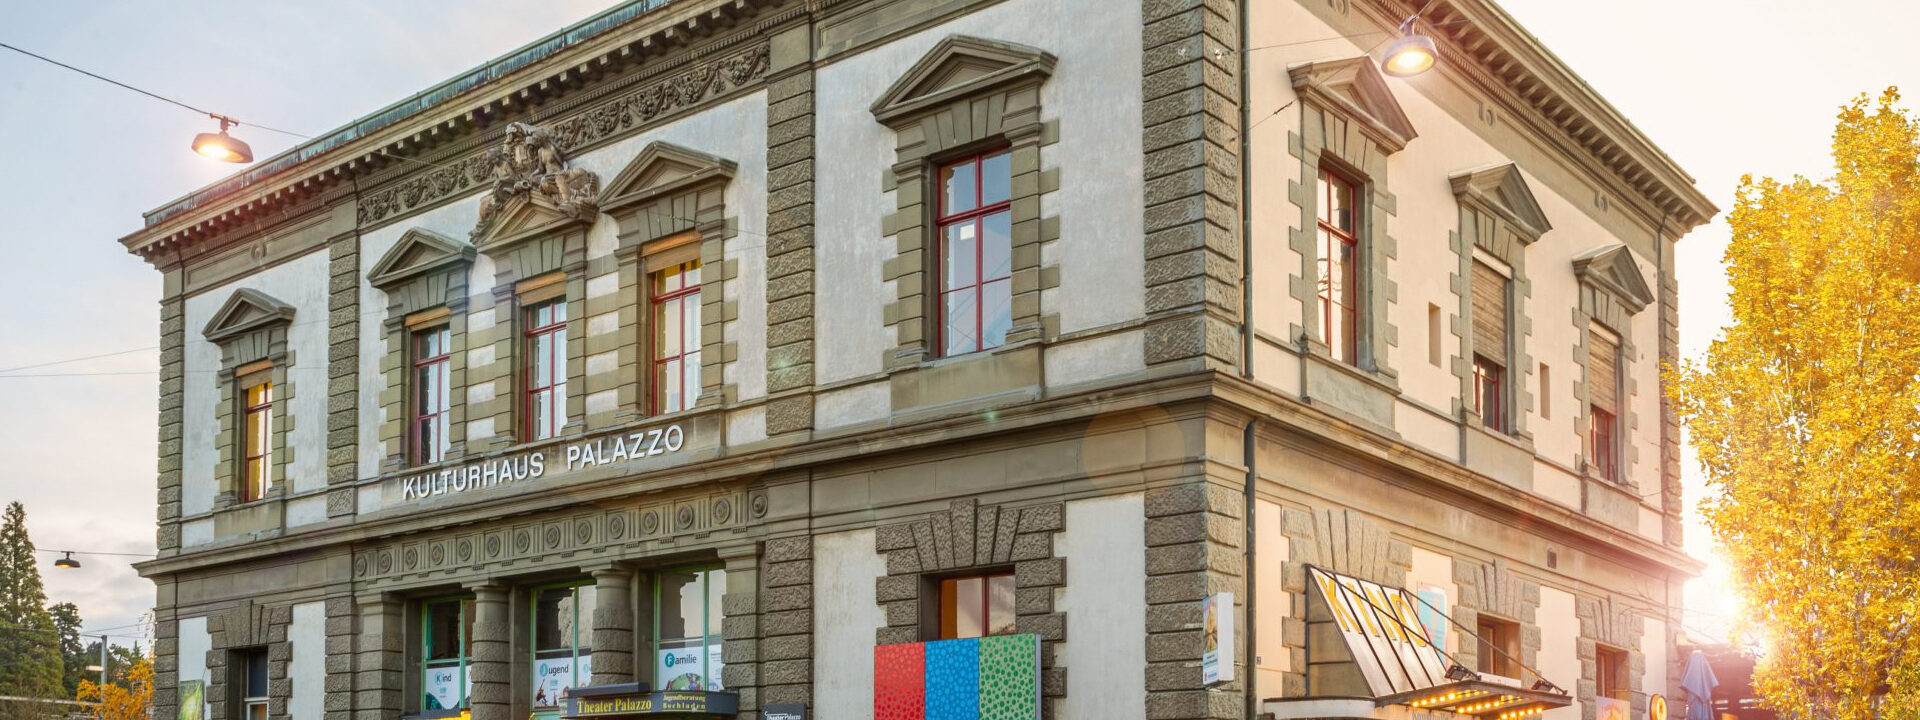 Kunsthalle Palazzo